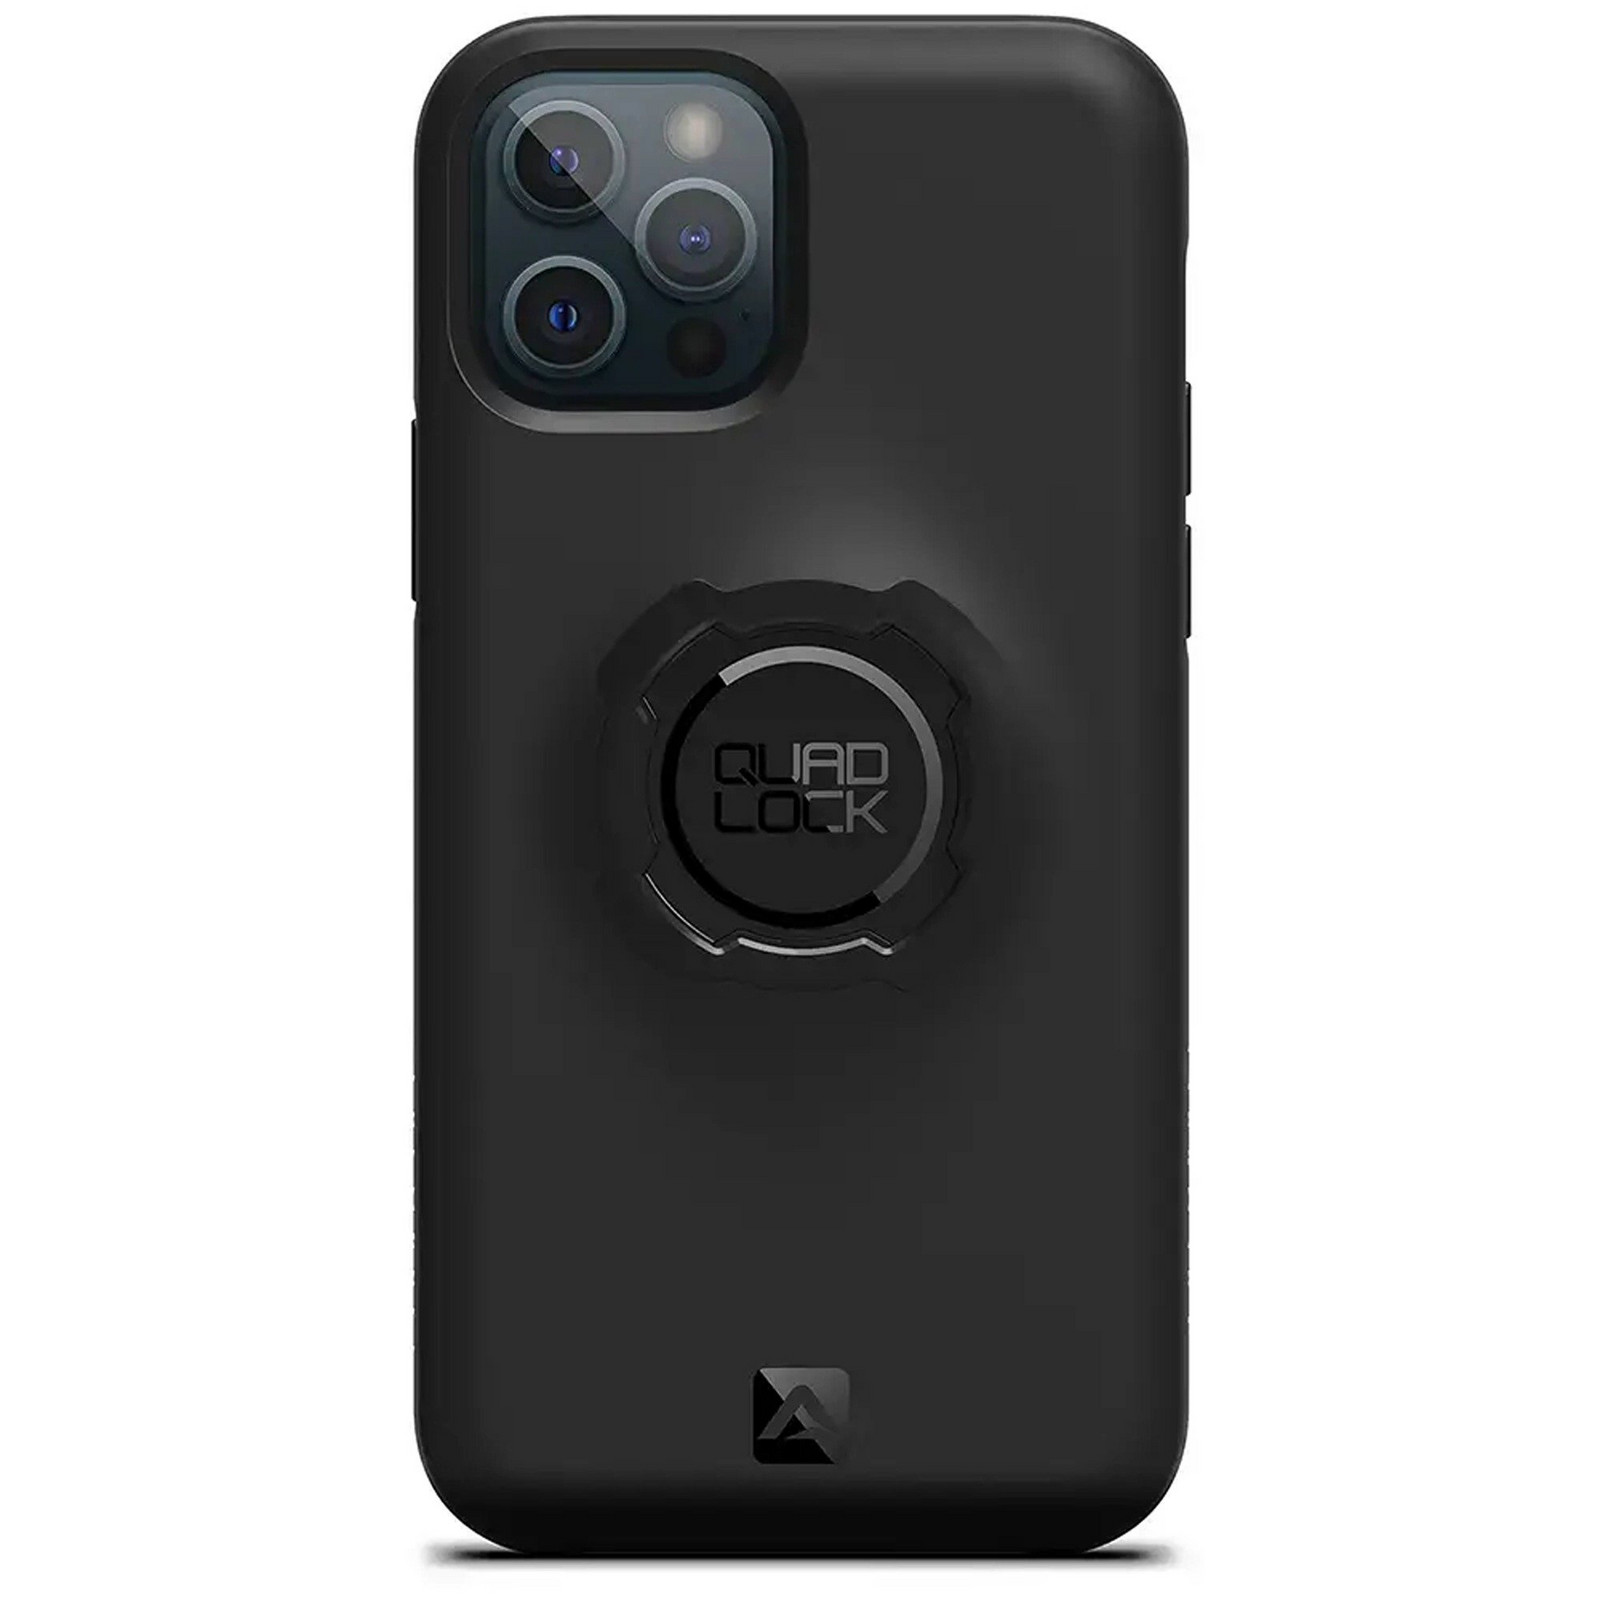 Quad Lock Case Iphone 12 / 12 Pro Size